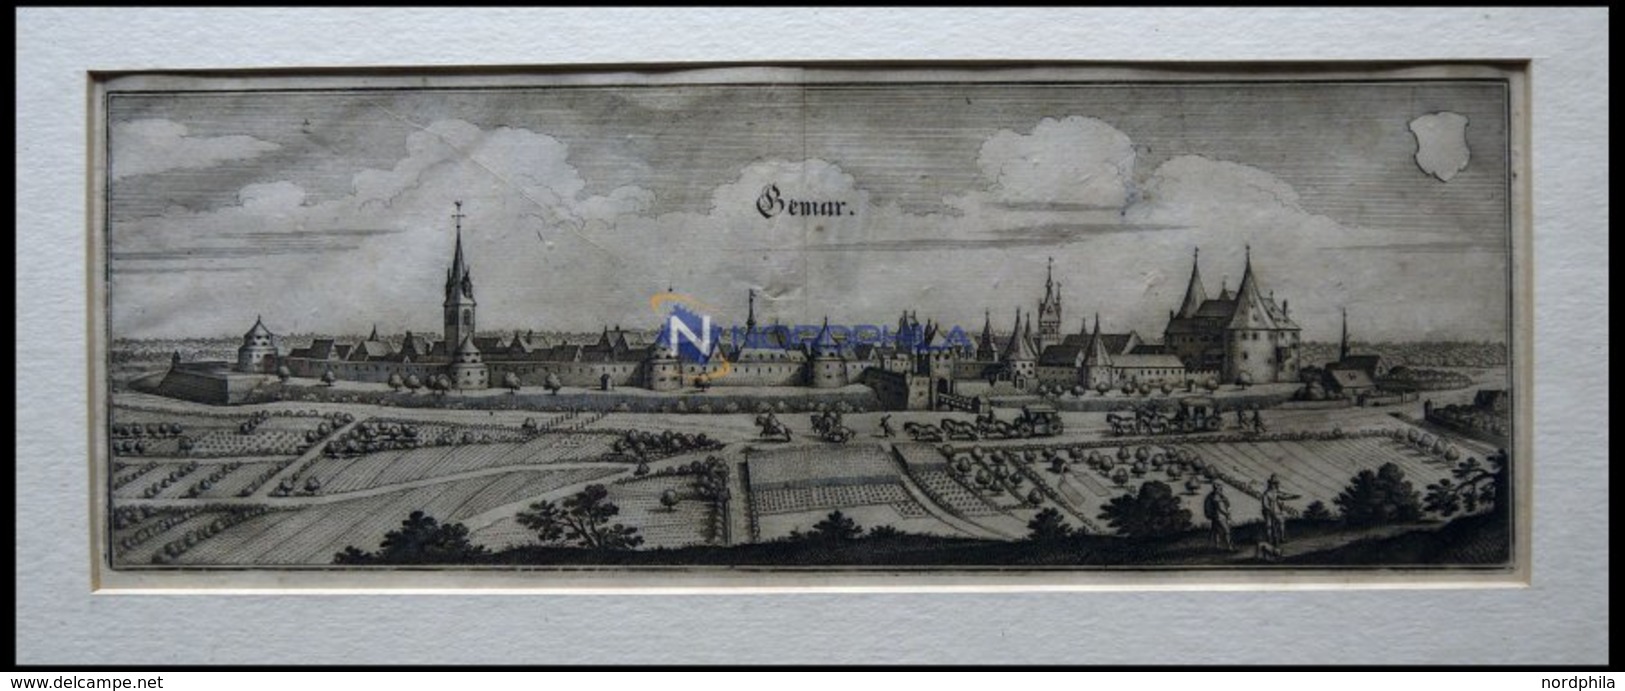 GEMAR, Gesamtansicht, Kupferstich Von Merian Um 1645 - Litografía